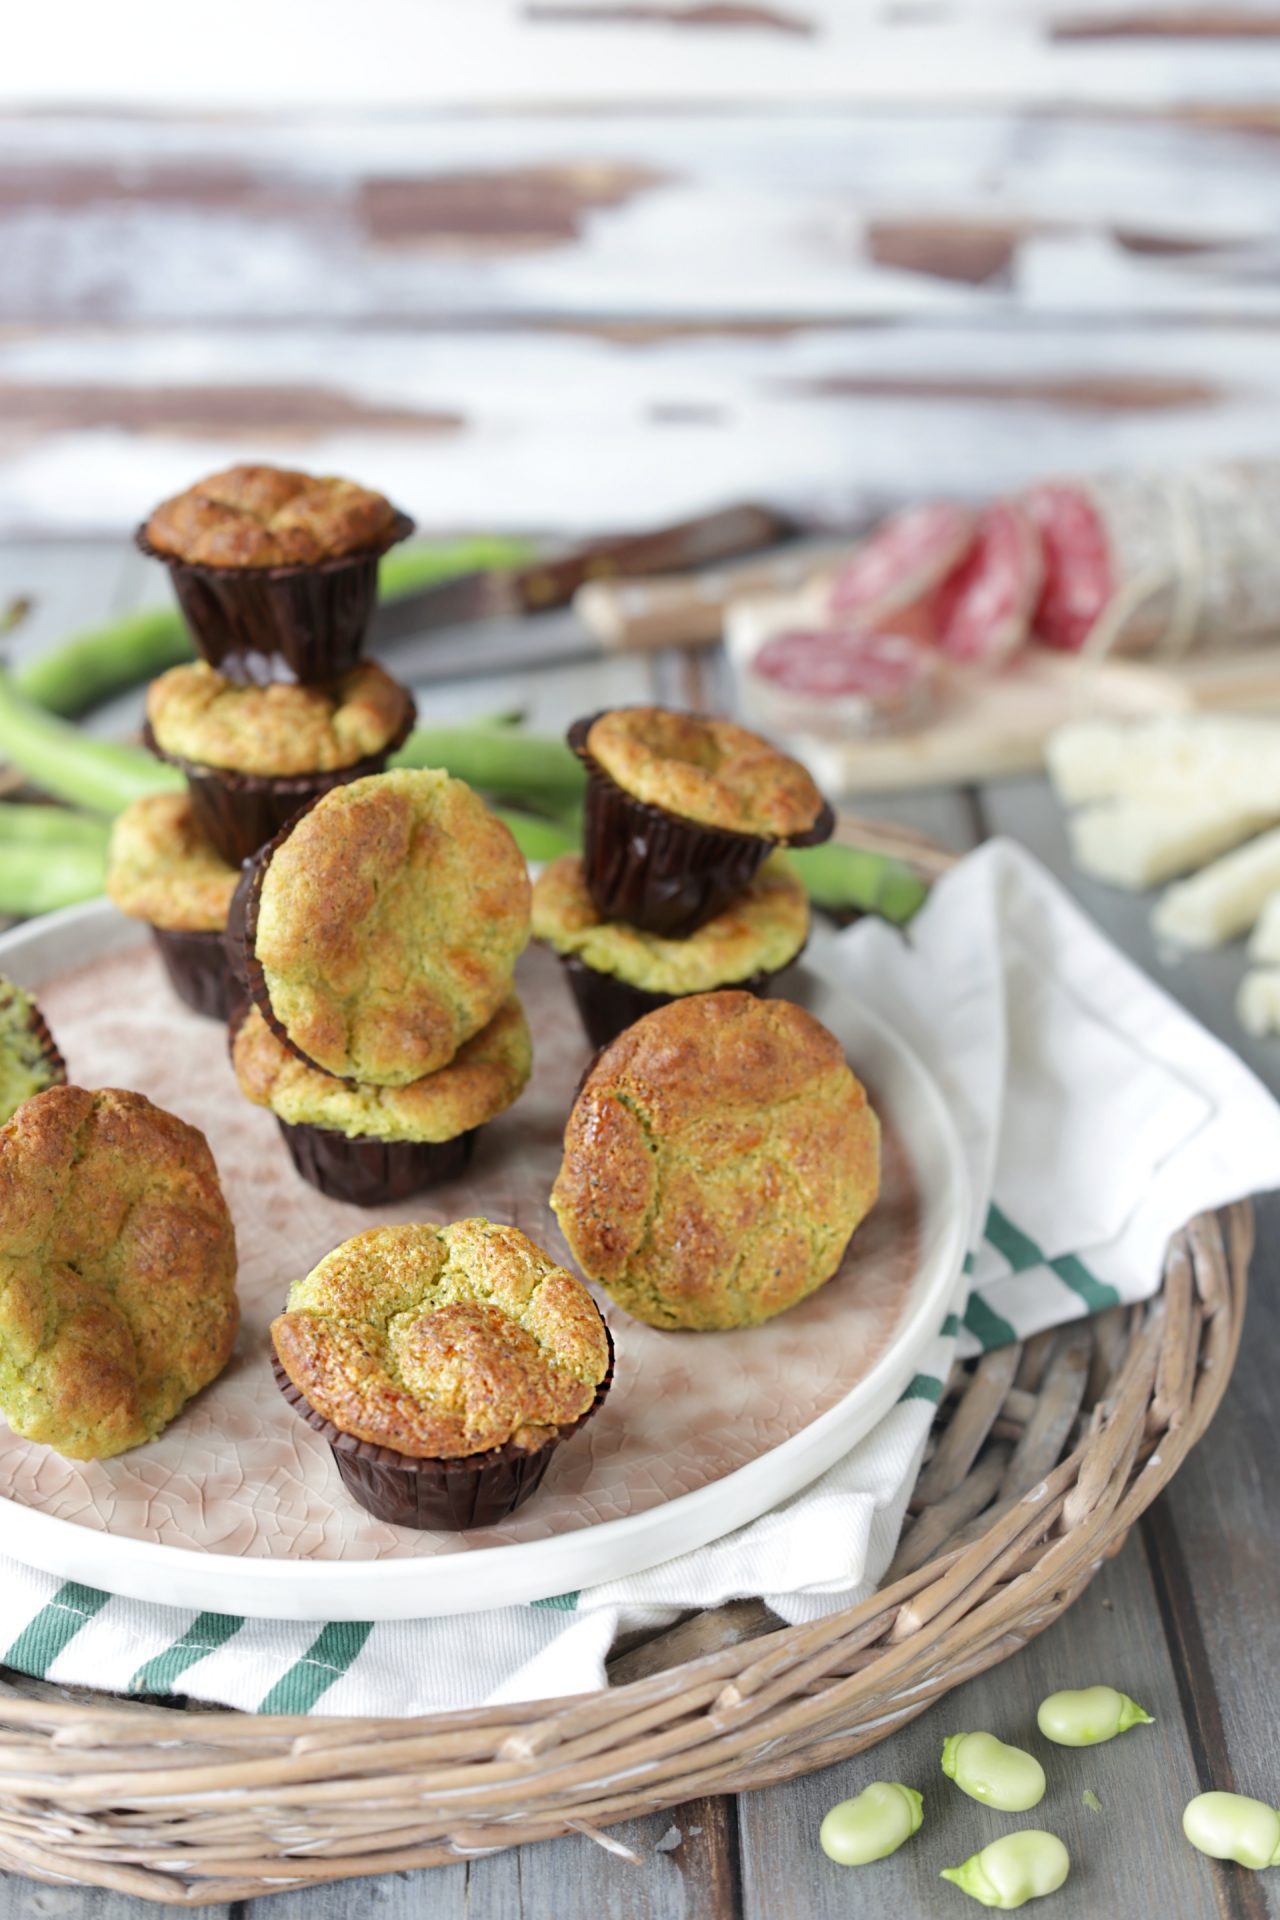 Ecco una ricetta per fare dei soffici e gustosi muffin salati con le fave fresche